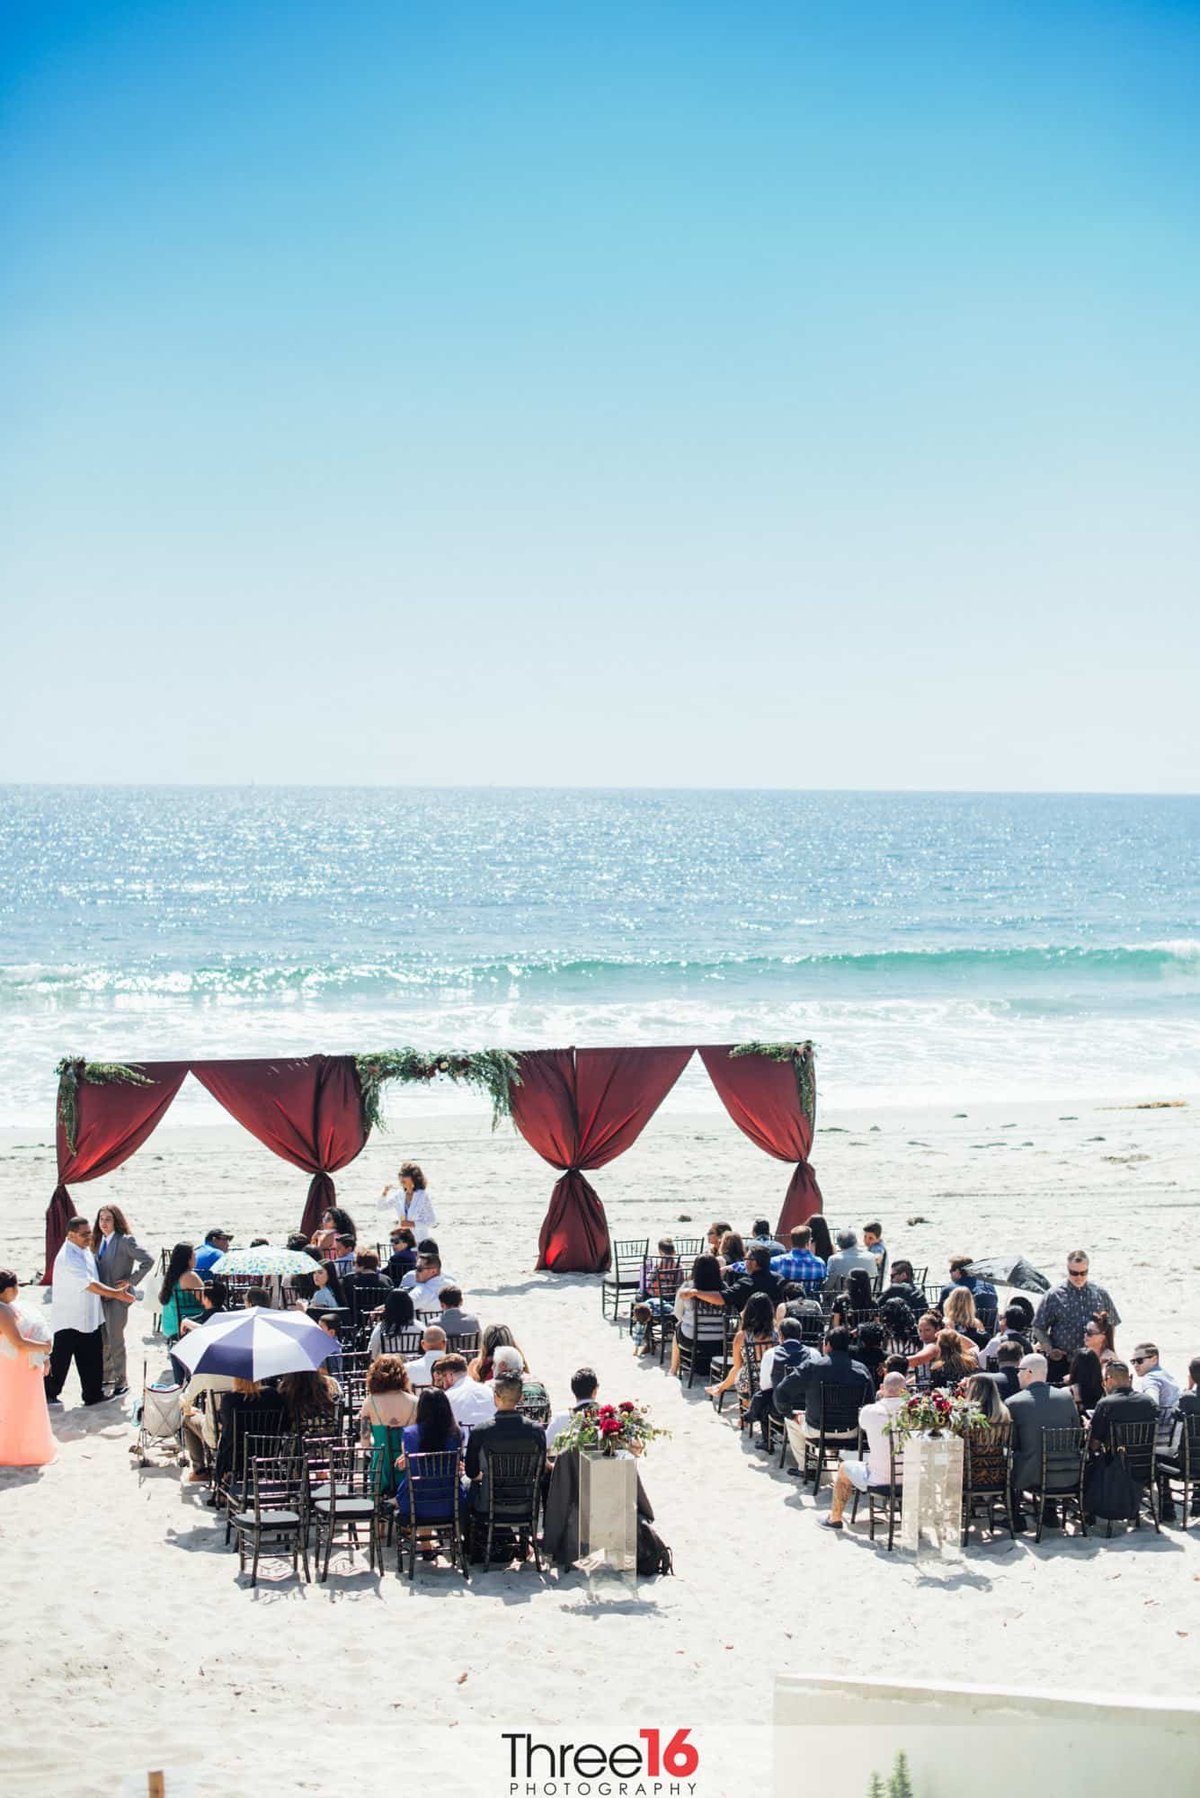 A view from above of a Salt Creek Beach wedding